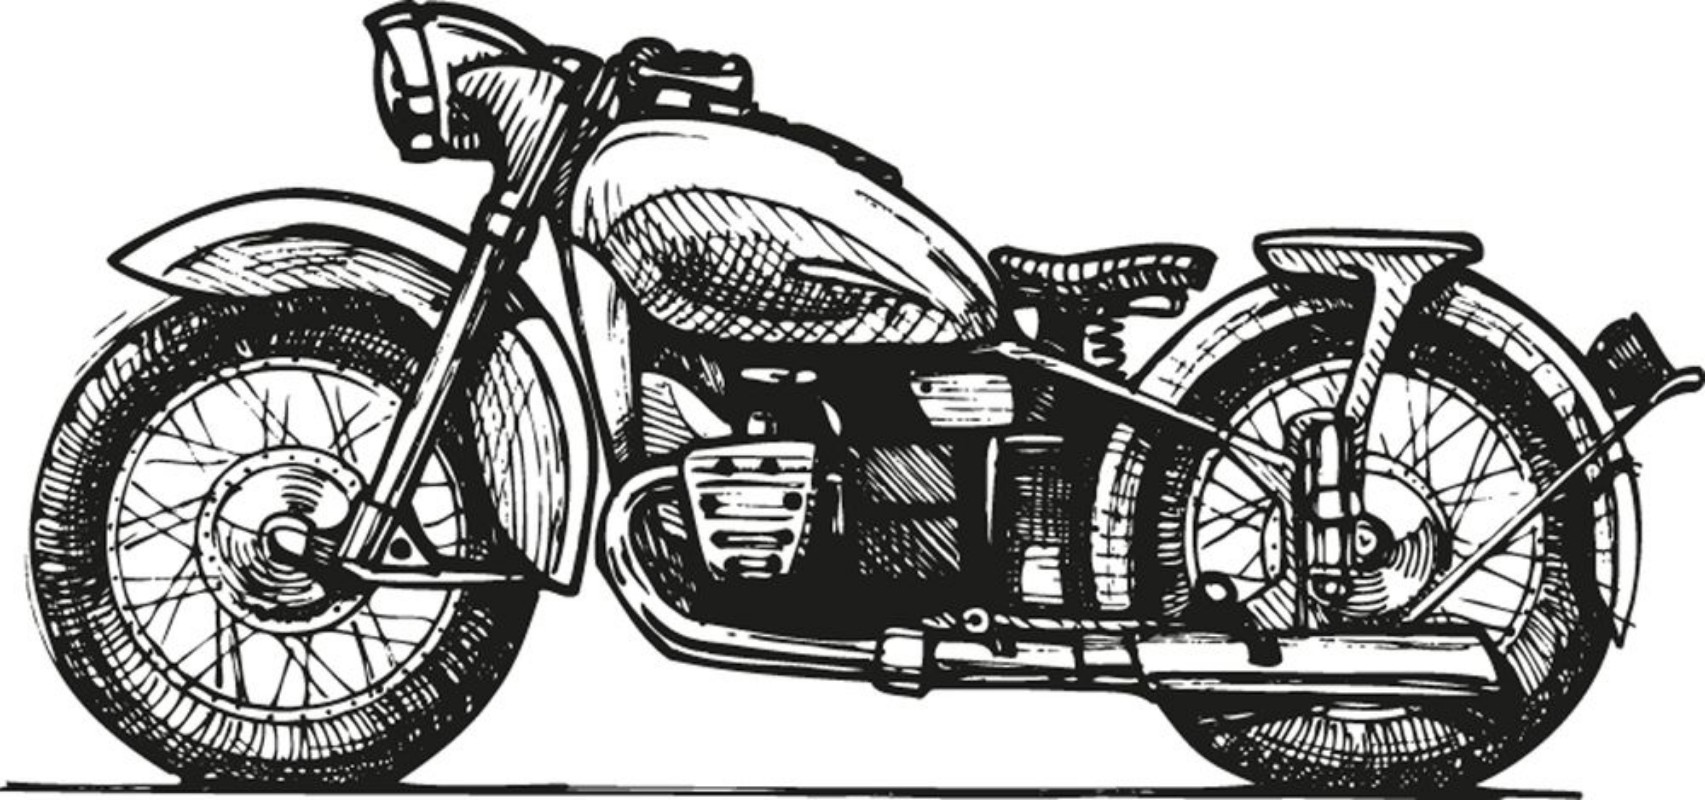 Image de Motorcycle